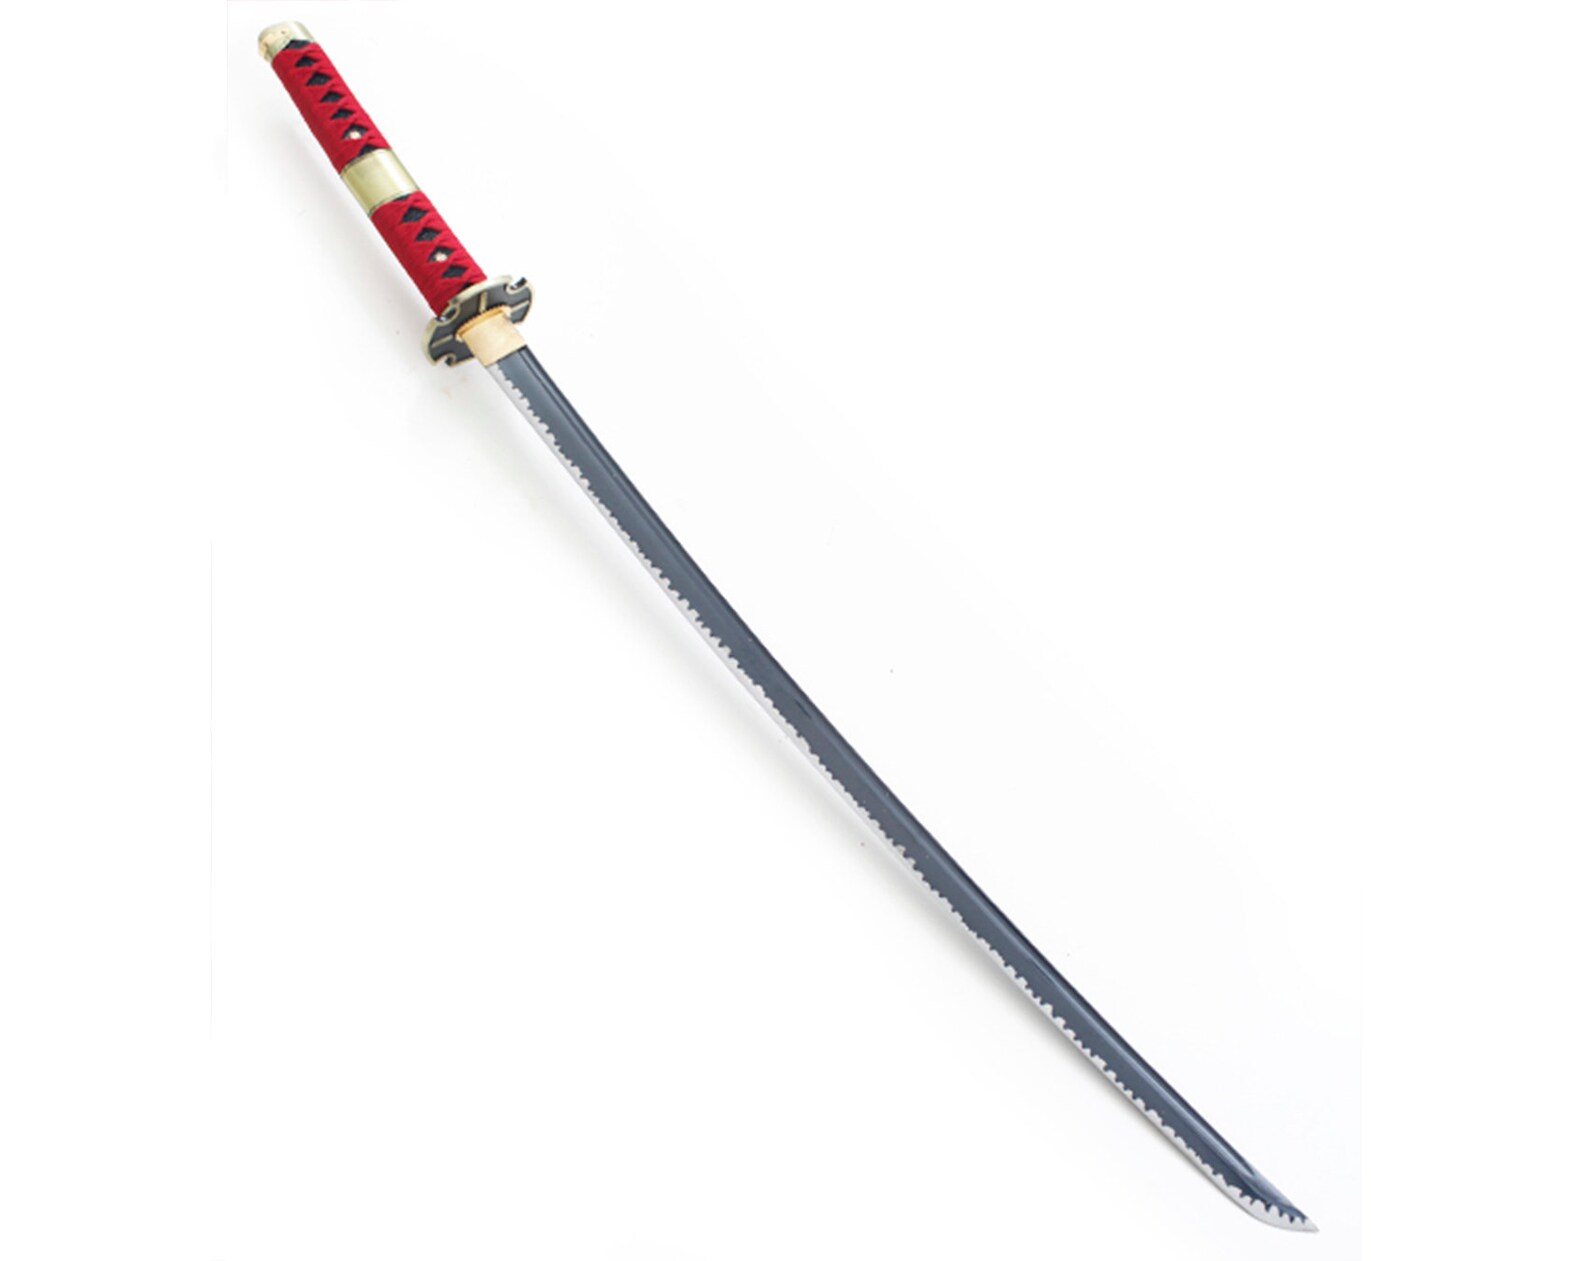 Katana Kitetsu Zoro Blade Maru 1045 Bushido Epee Sabre Sword | Etsy